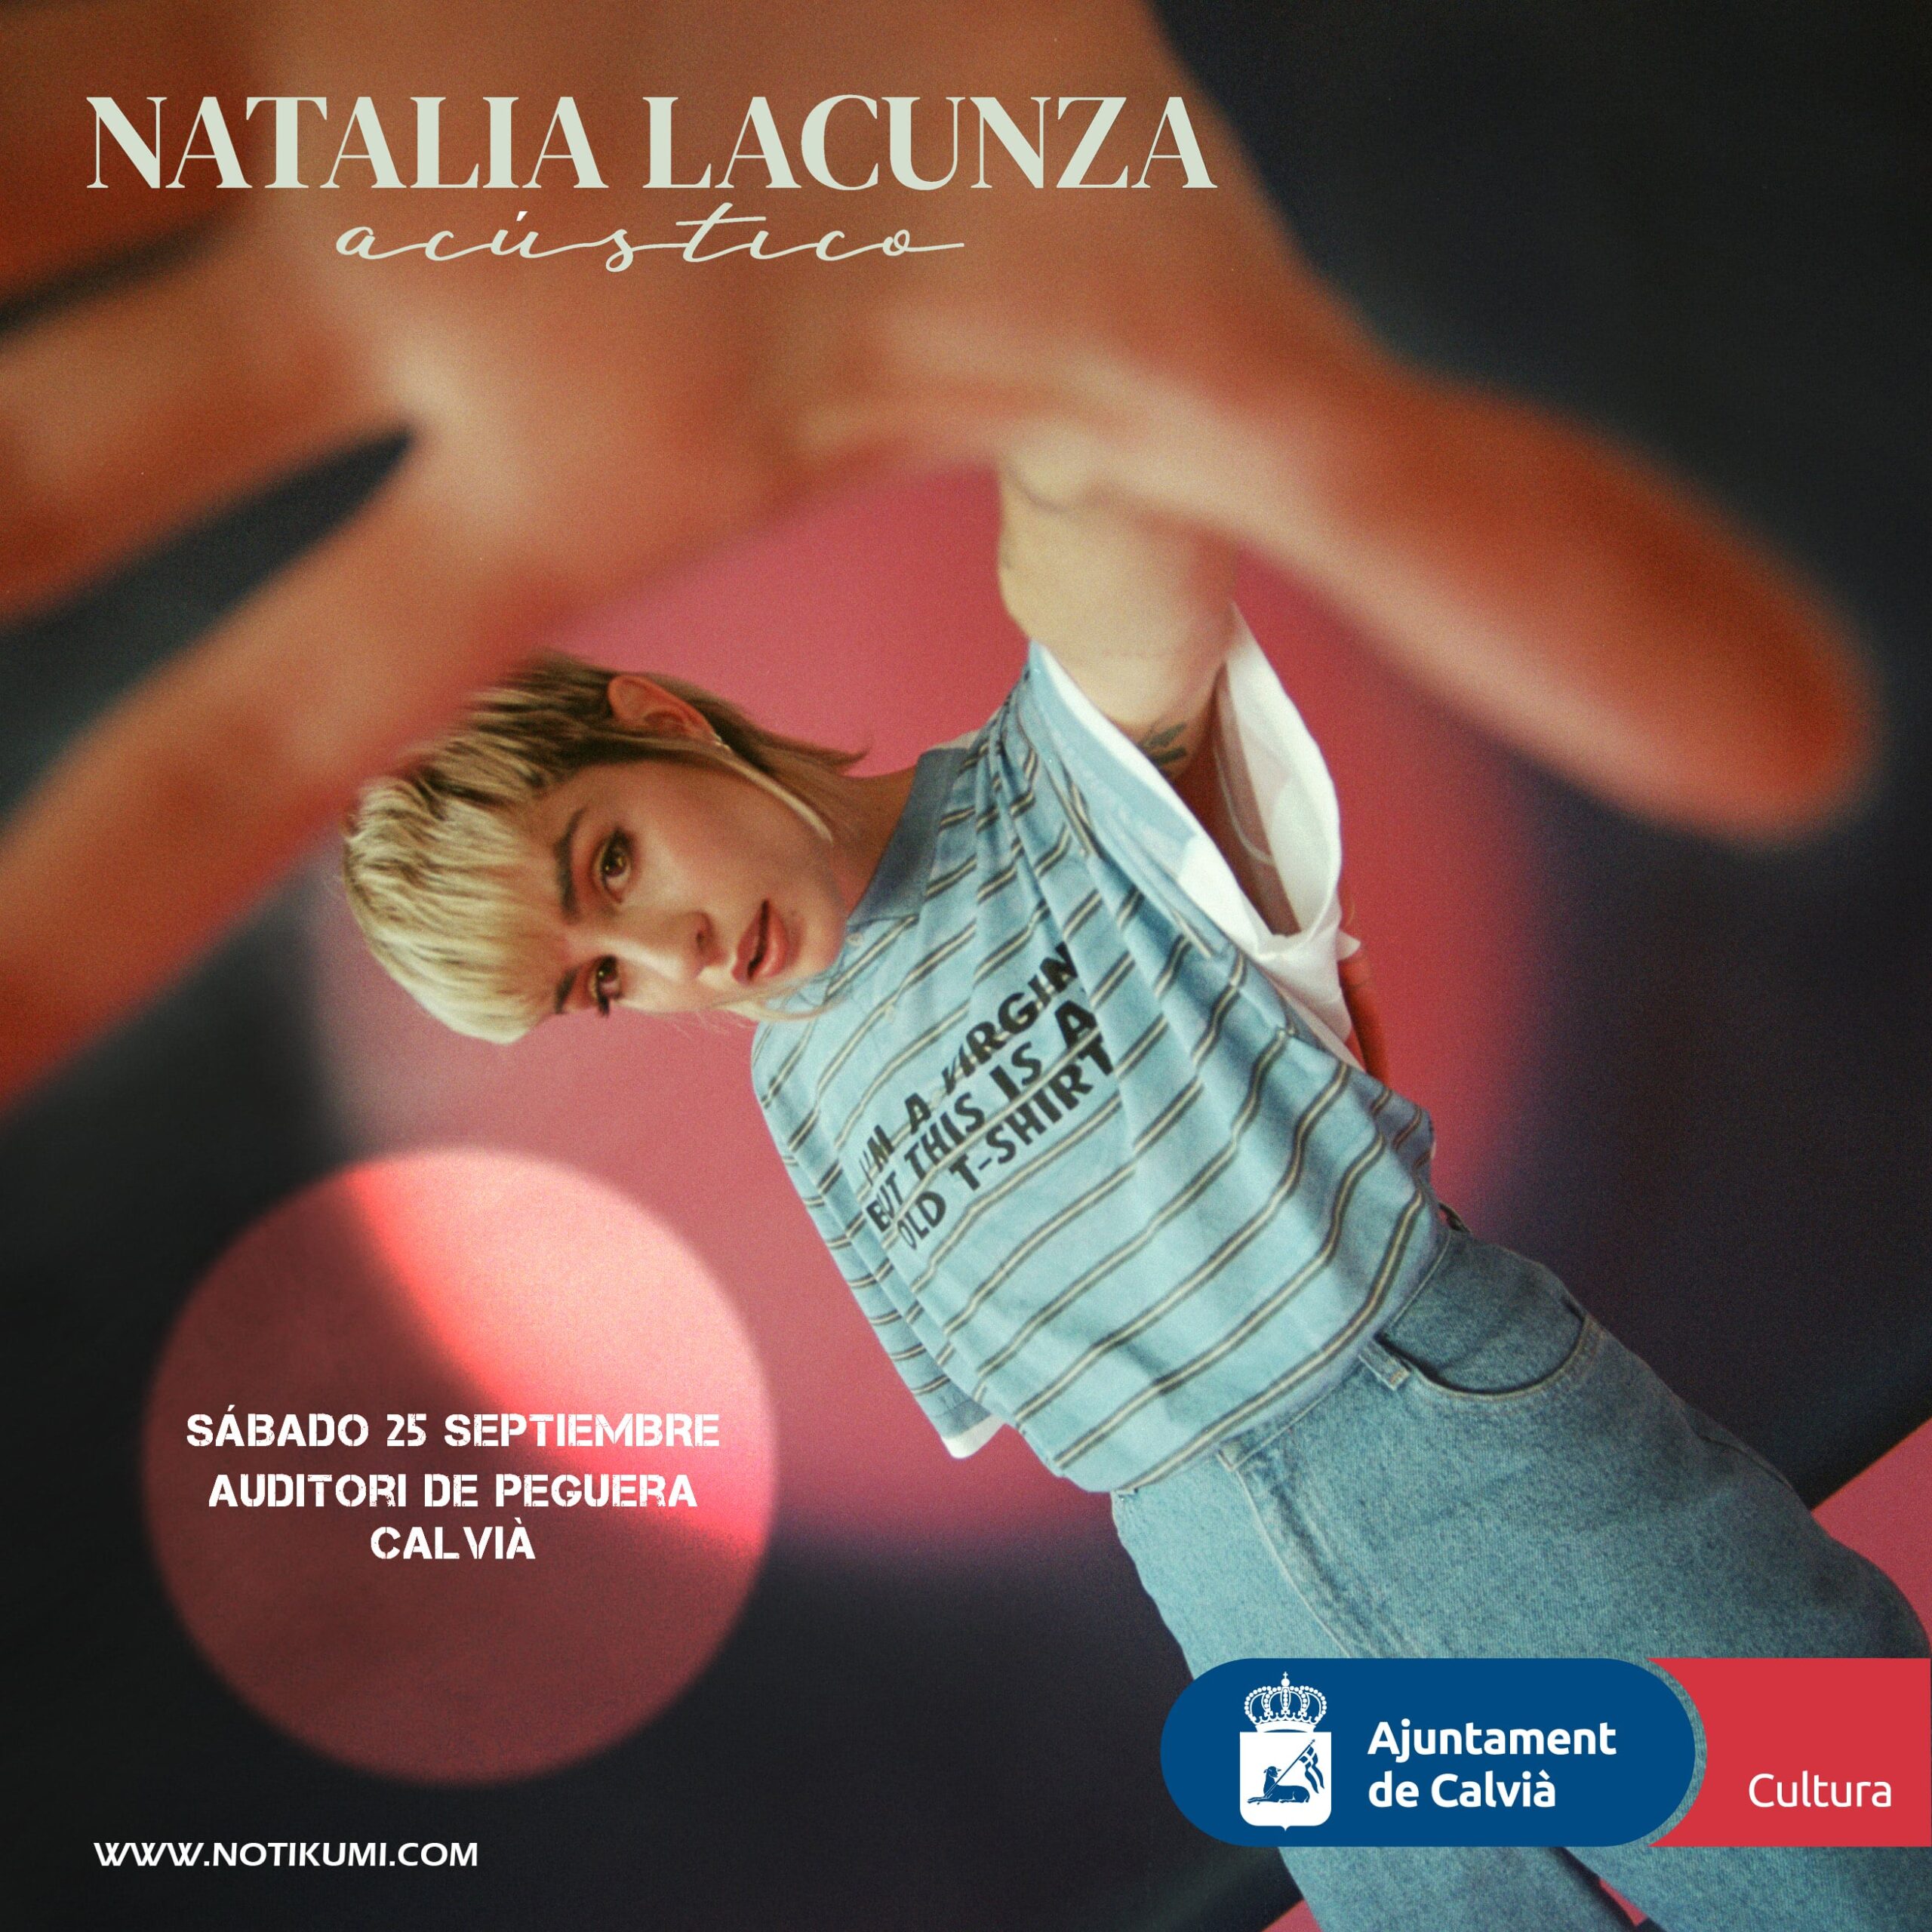 Aplazado el concierto de Natalia Lacunza en Peguera